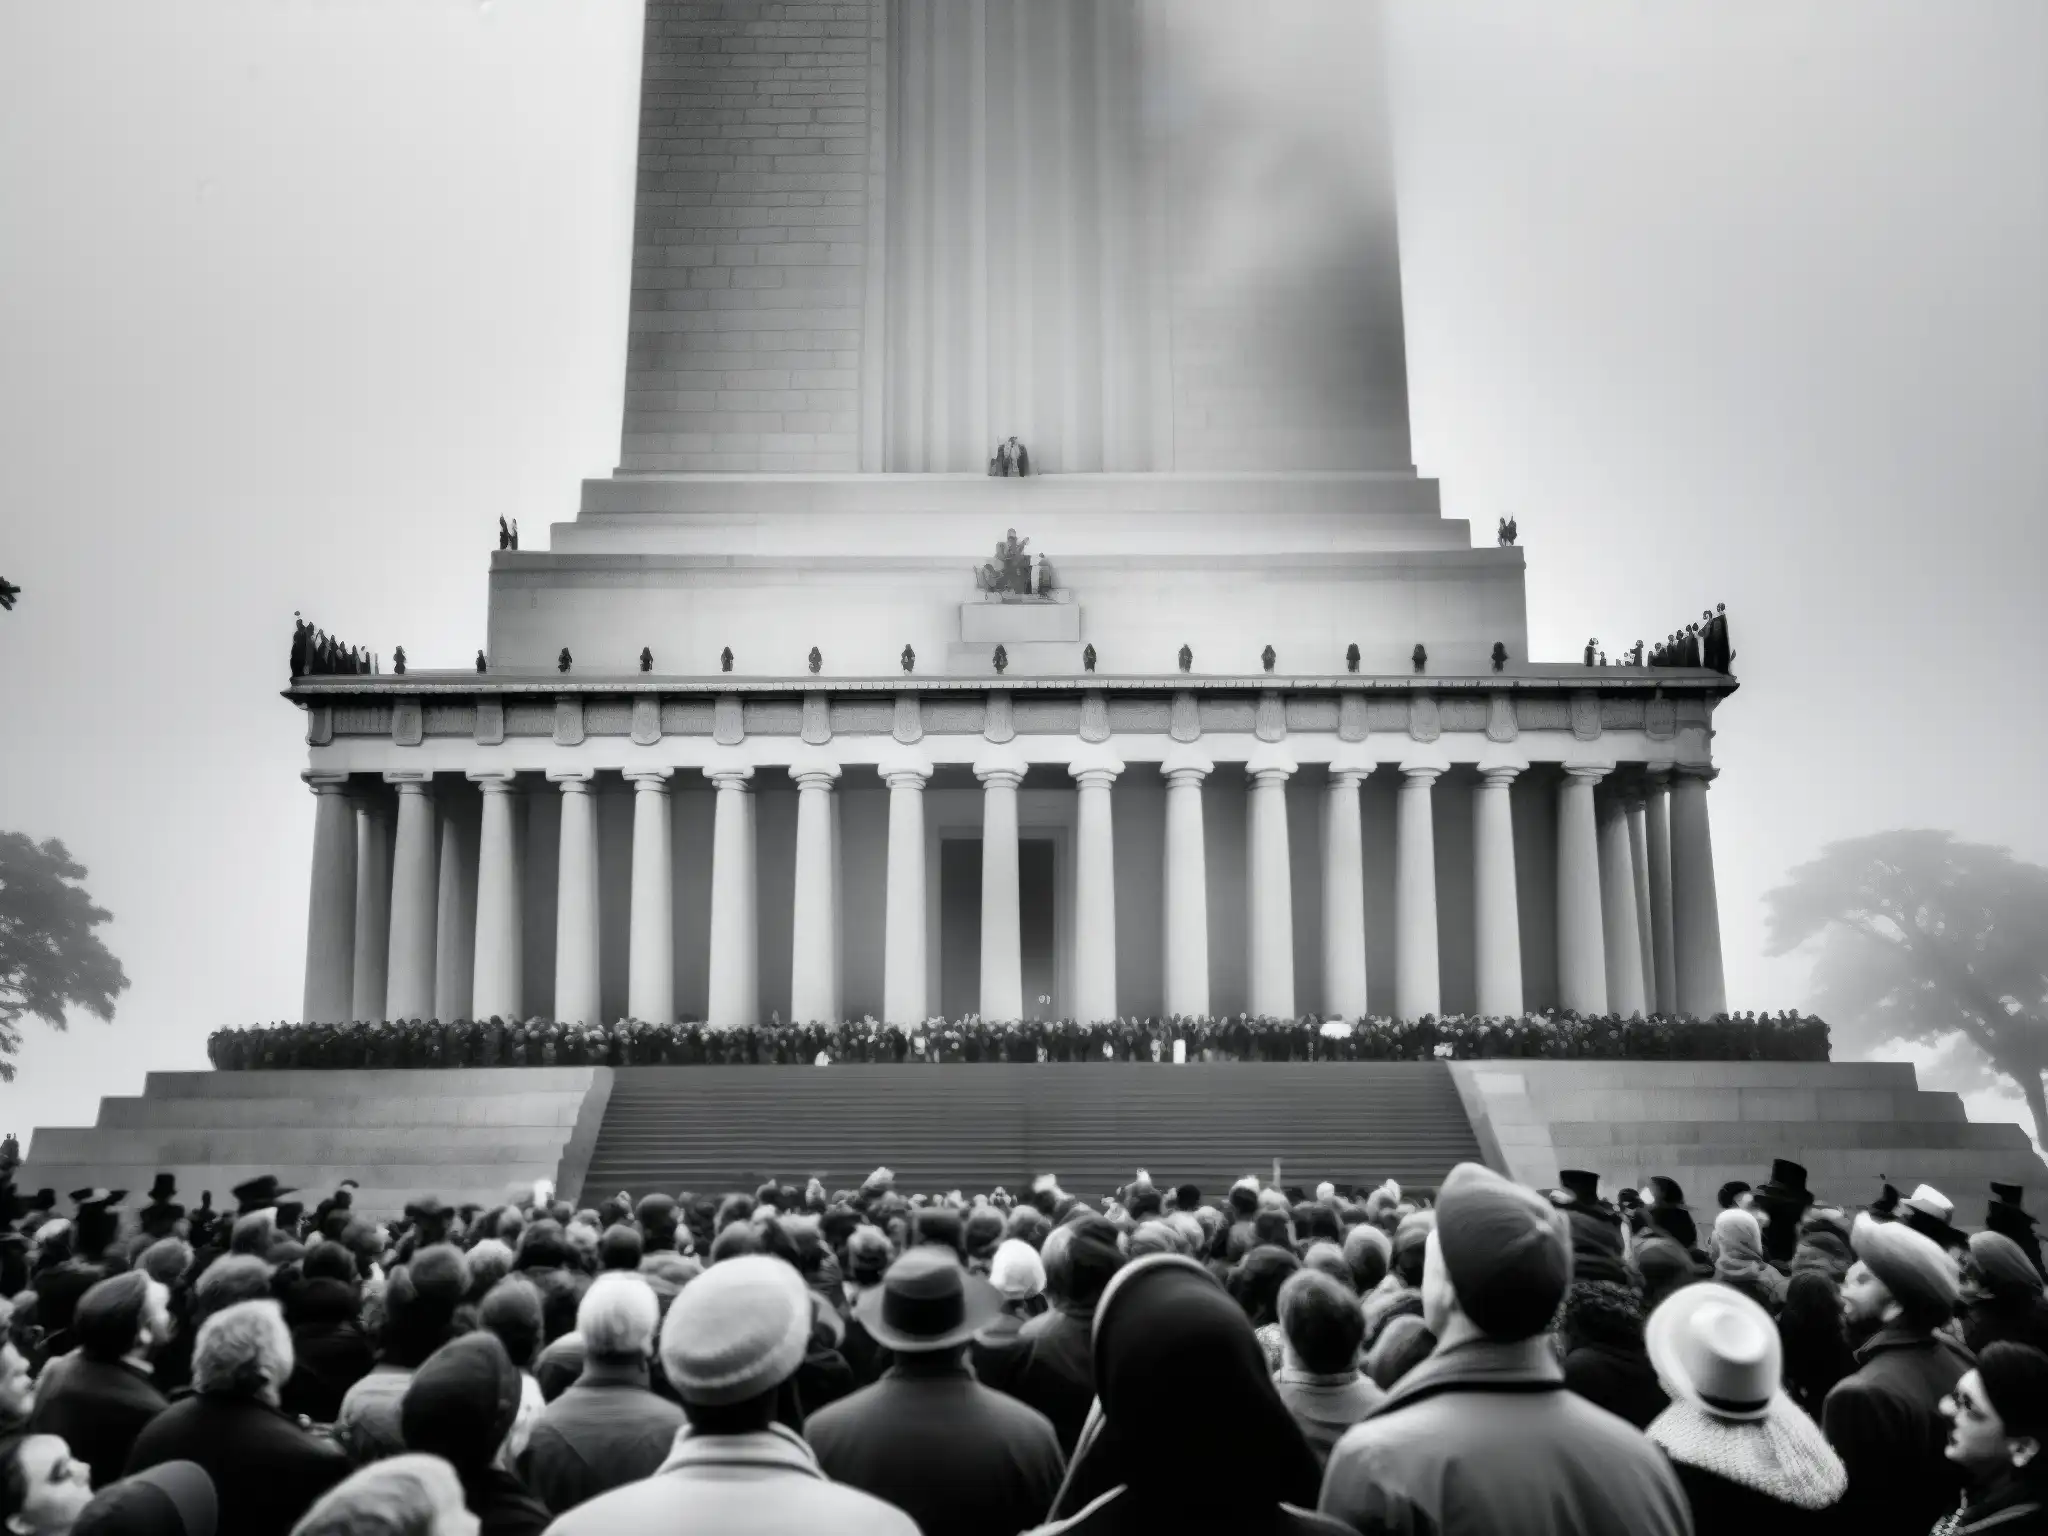 Una multitud contemplando un monumento histórico envuelto en niebla, mostrando el proceso psicológico de mitificación de eventos históricos